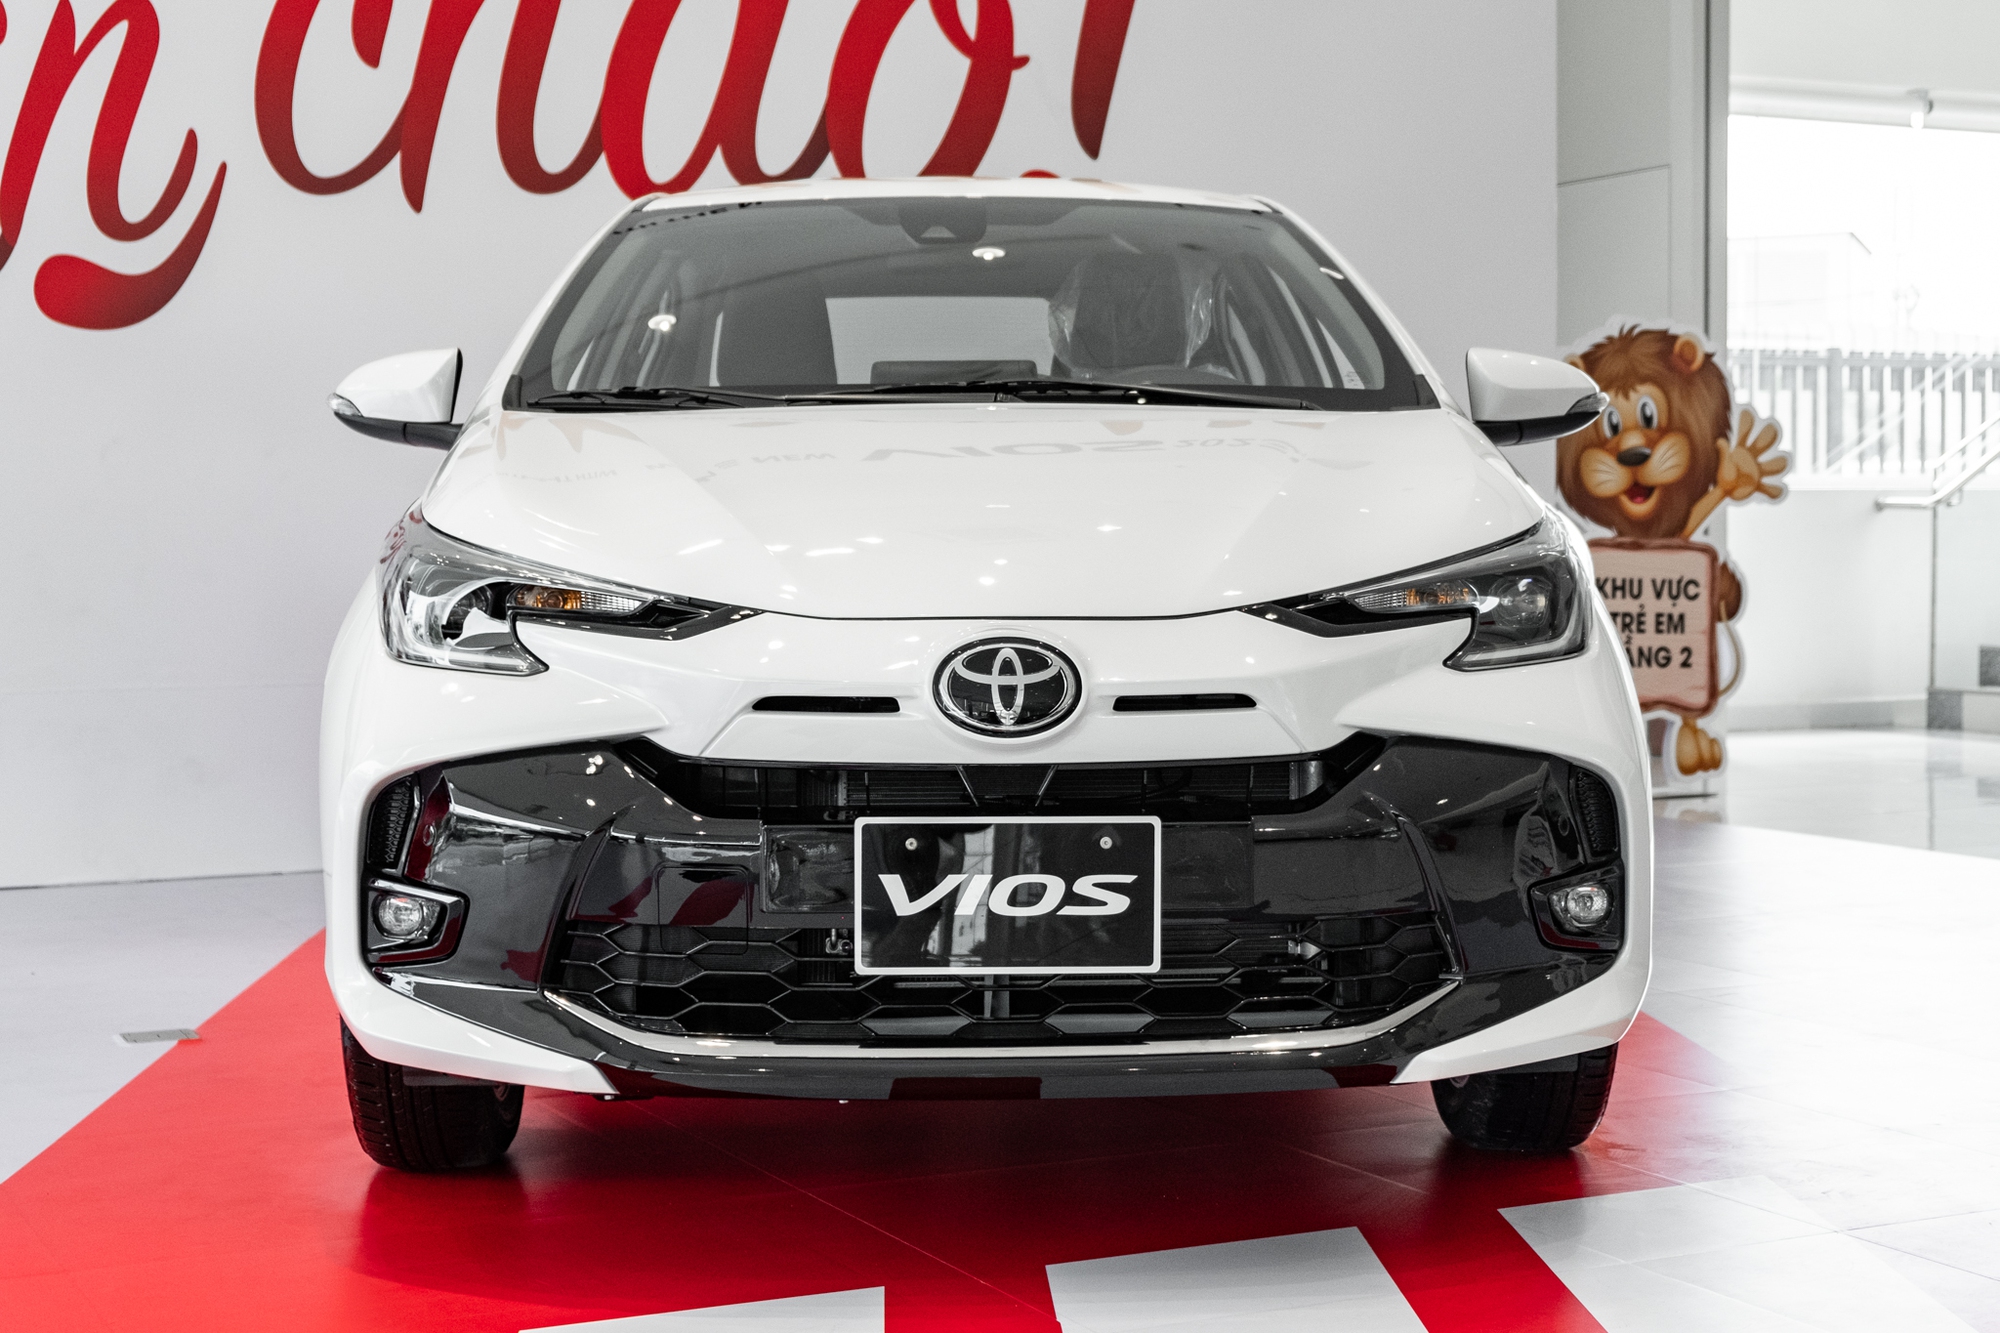 Toyota Vios 2023 chốt giá từ 479 triệu đồng tại VIệt Nam: Thêm trang bị nhưng rẻ hơn, bản base hạ giá còn gần ngang Accent - Ảnh 2.